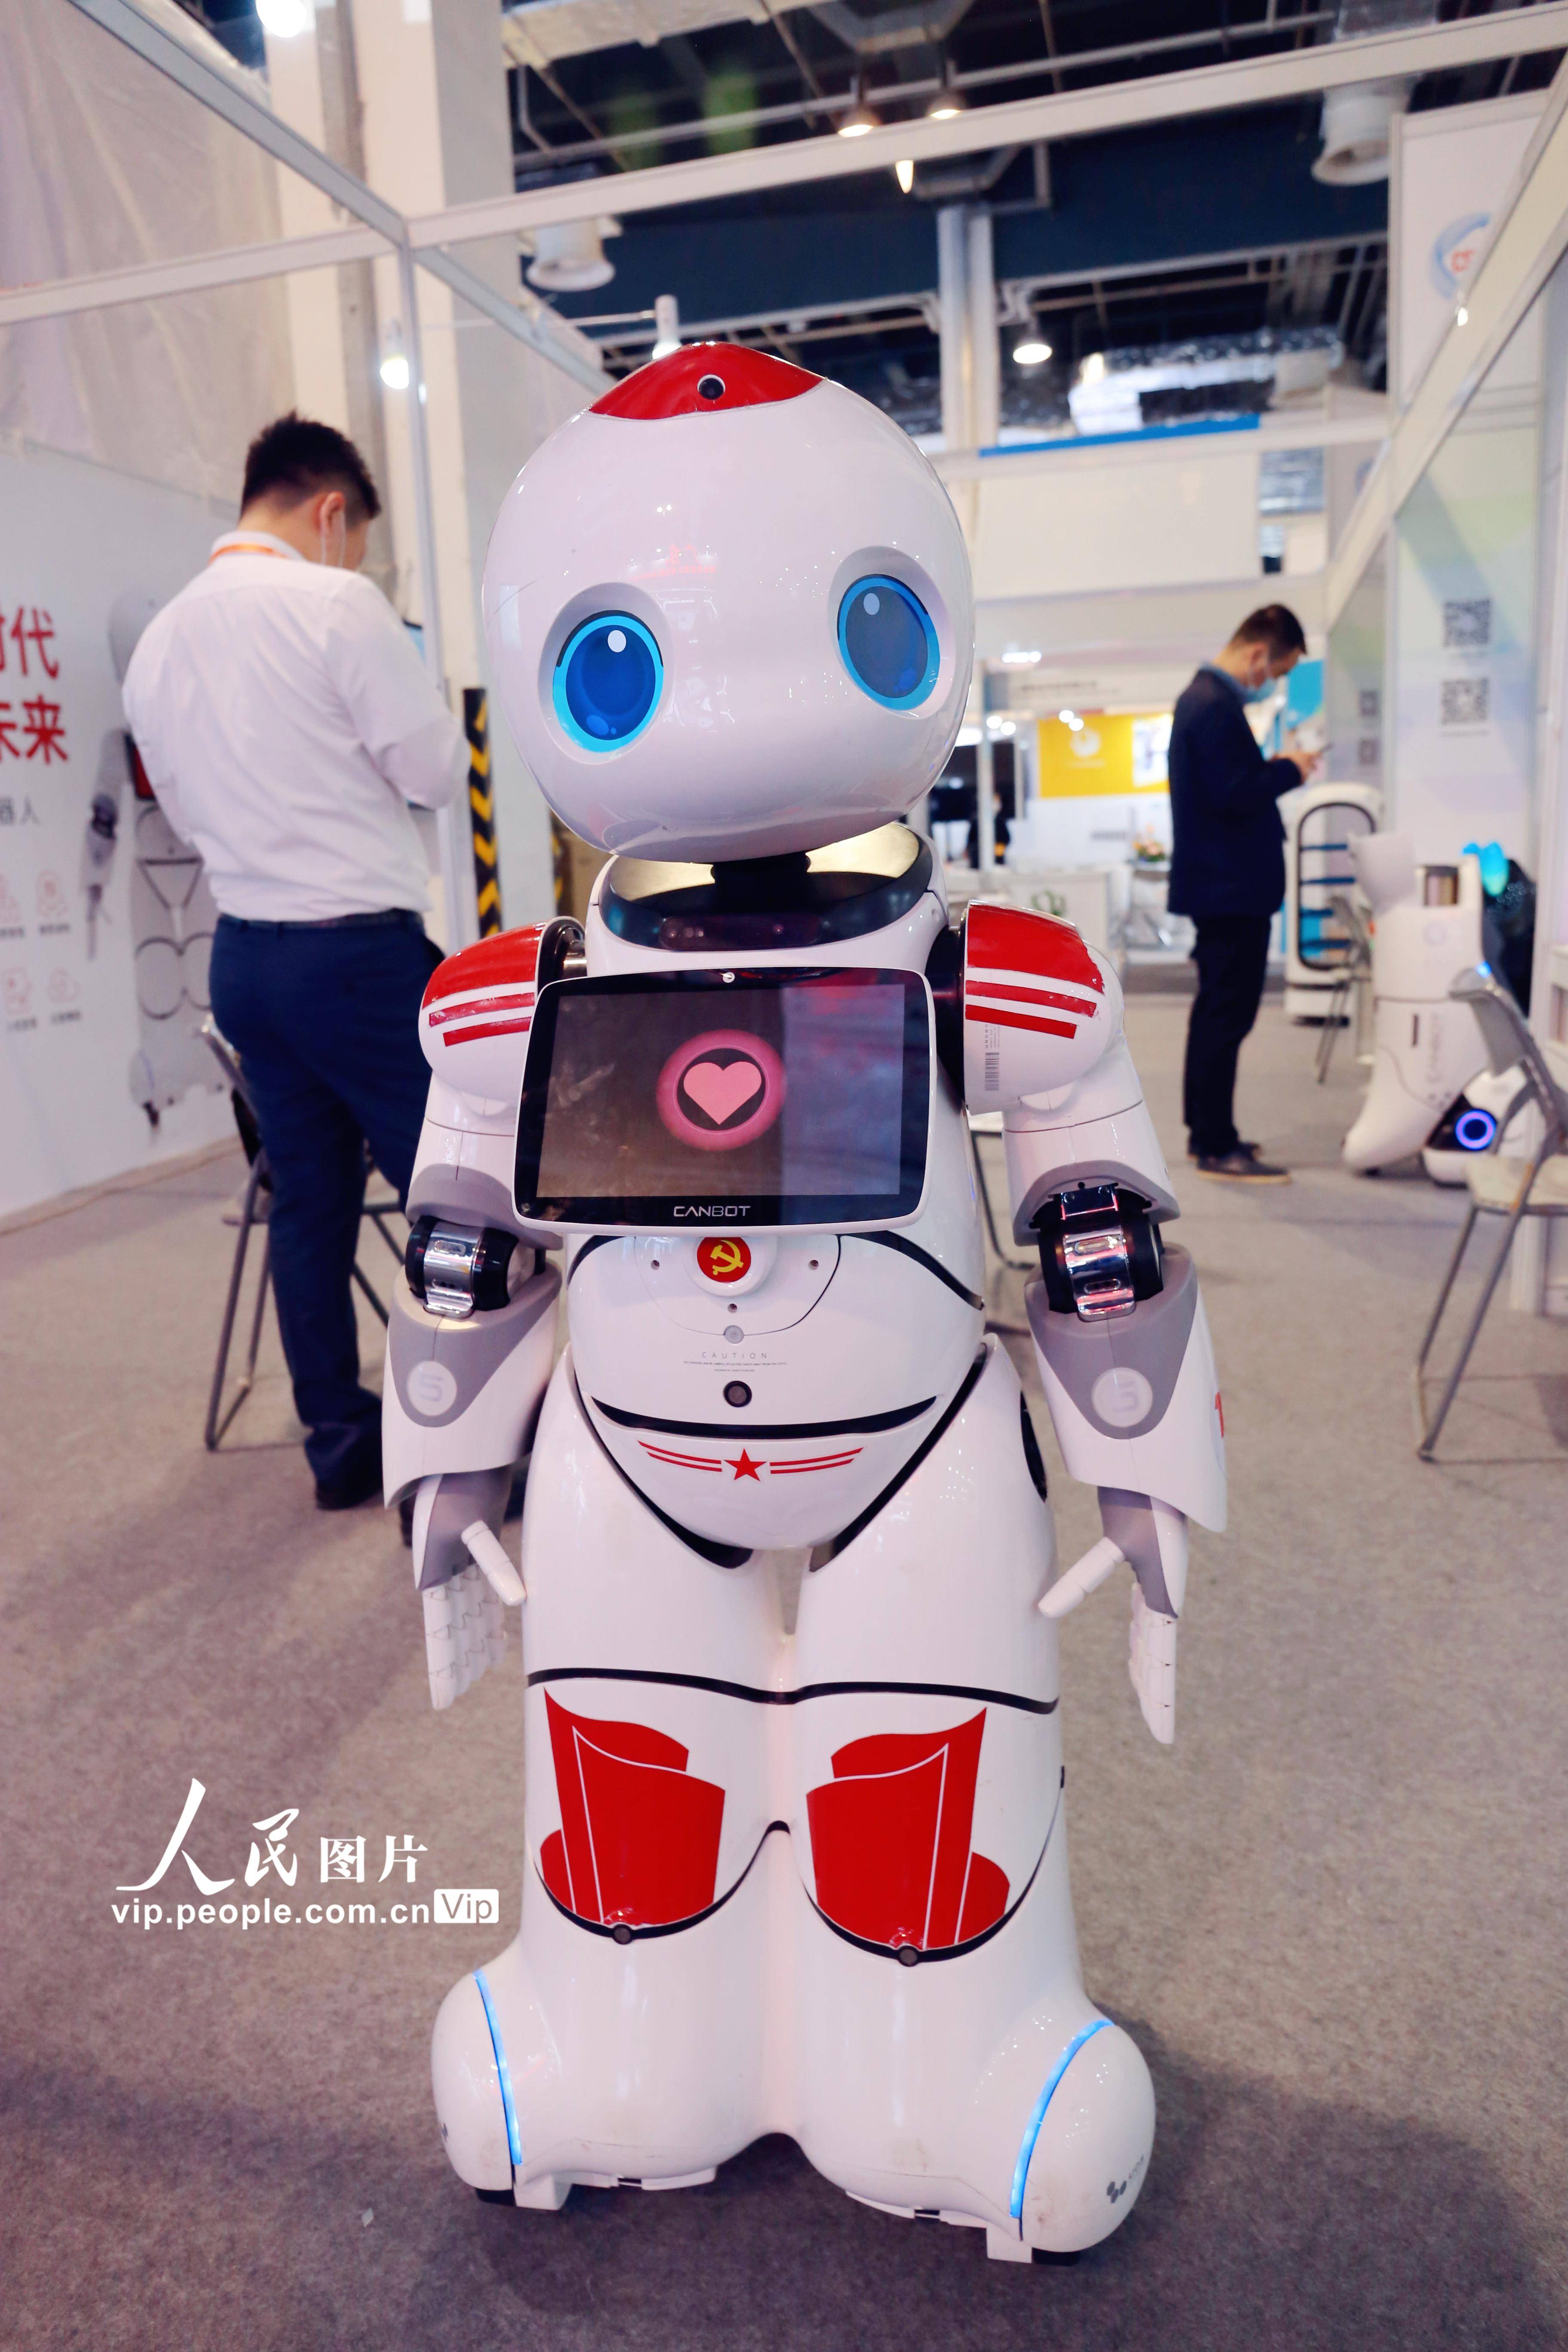 近日,各种造型和用途的机器人在上海中国国际技术进出口交易会上争奇